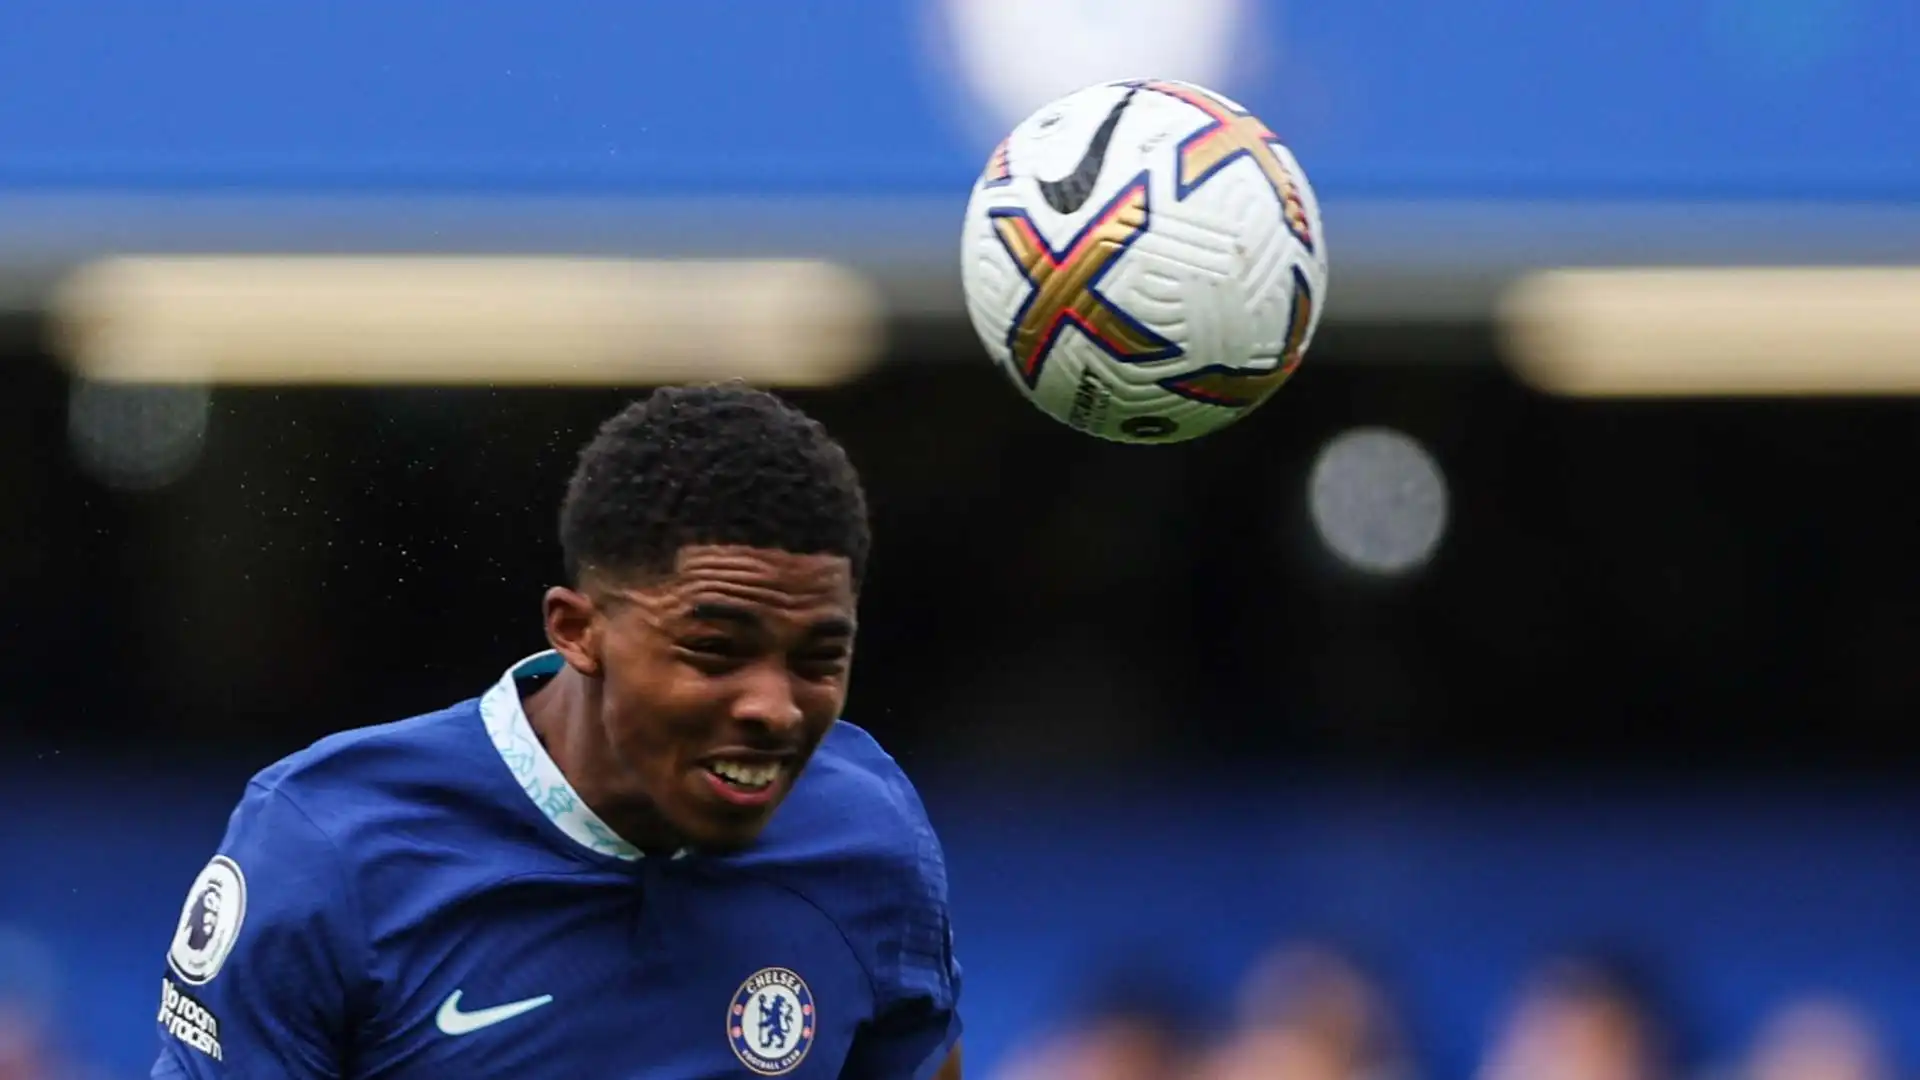 Il Chelsea, con una spesa di 82,5 milioni di euro, ha rinforzato la difesa: dal Leicester è arrivato Wesley Fofana, al secondo posto in questa classifica